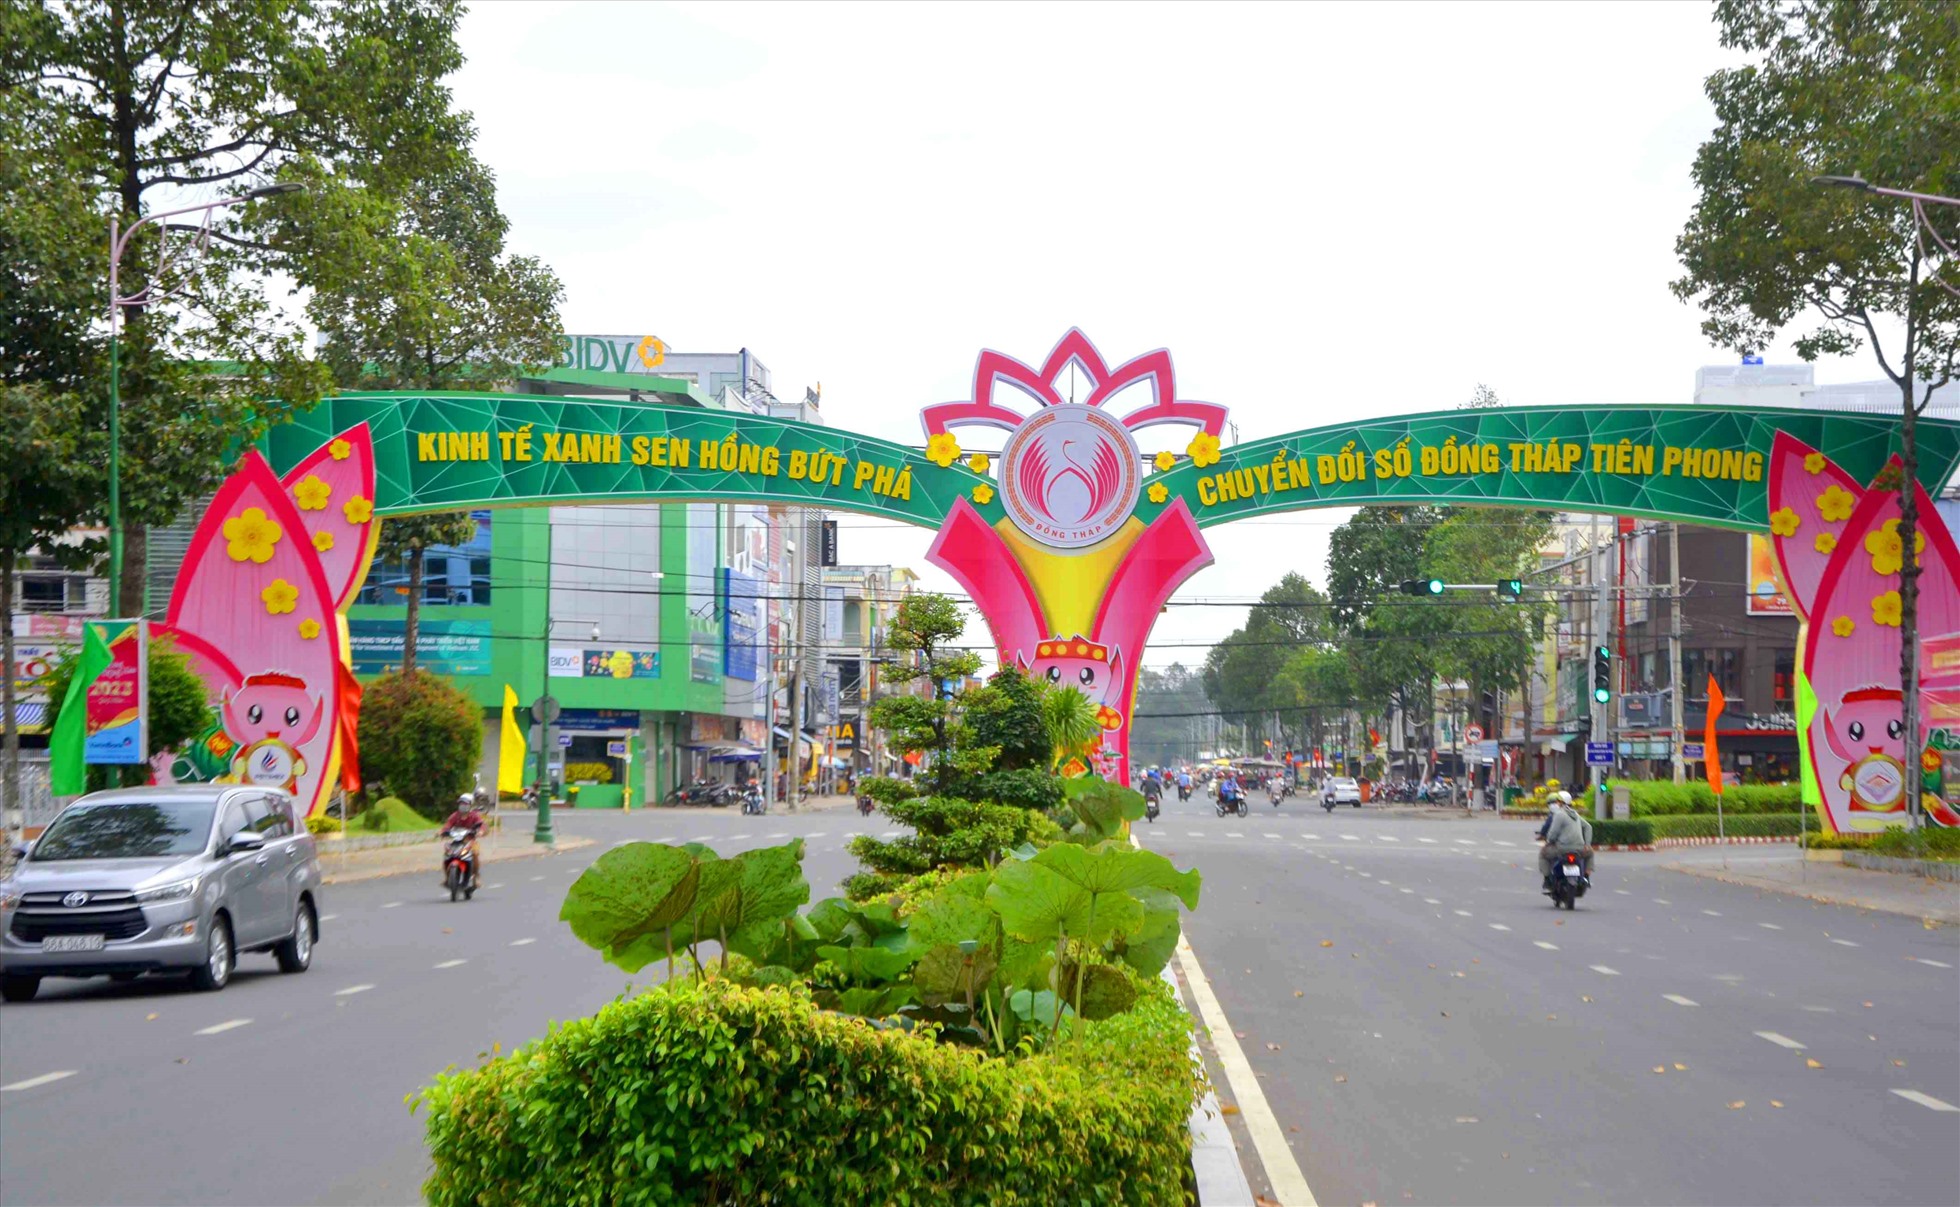 Slogan về Kinh tế xanh và chuyển đổi số của tỉnh Đồng Tháp hiện diện trang trọng trên cổng dẫn vào trung tâm hành chính tỉnh. Ảnh: Lục Tùng